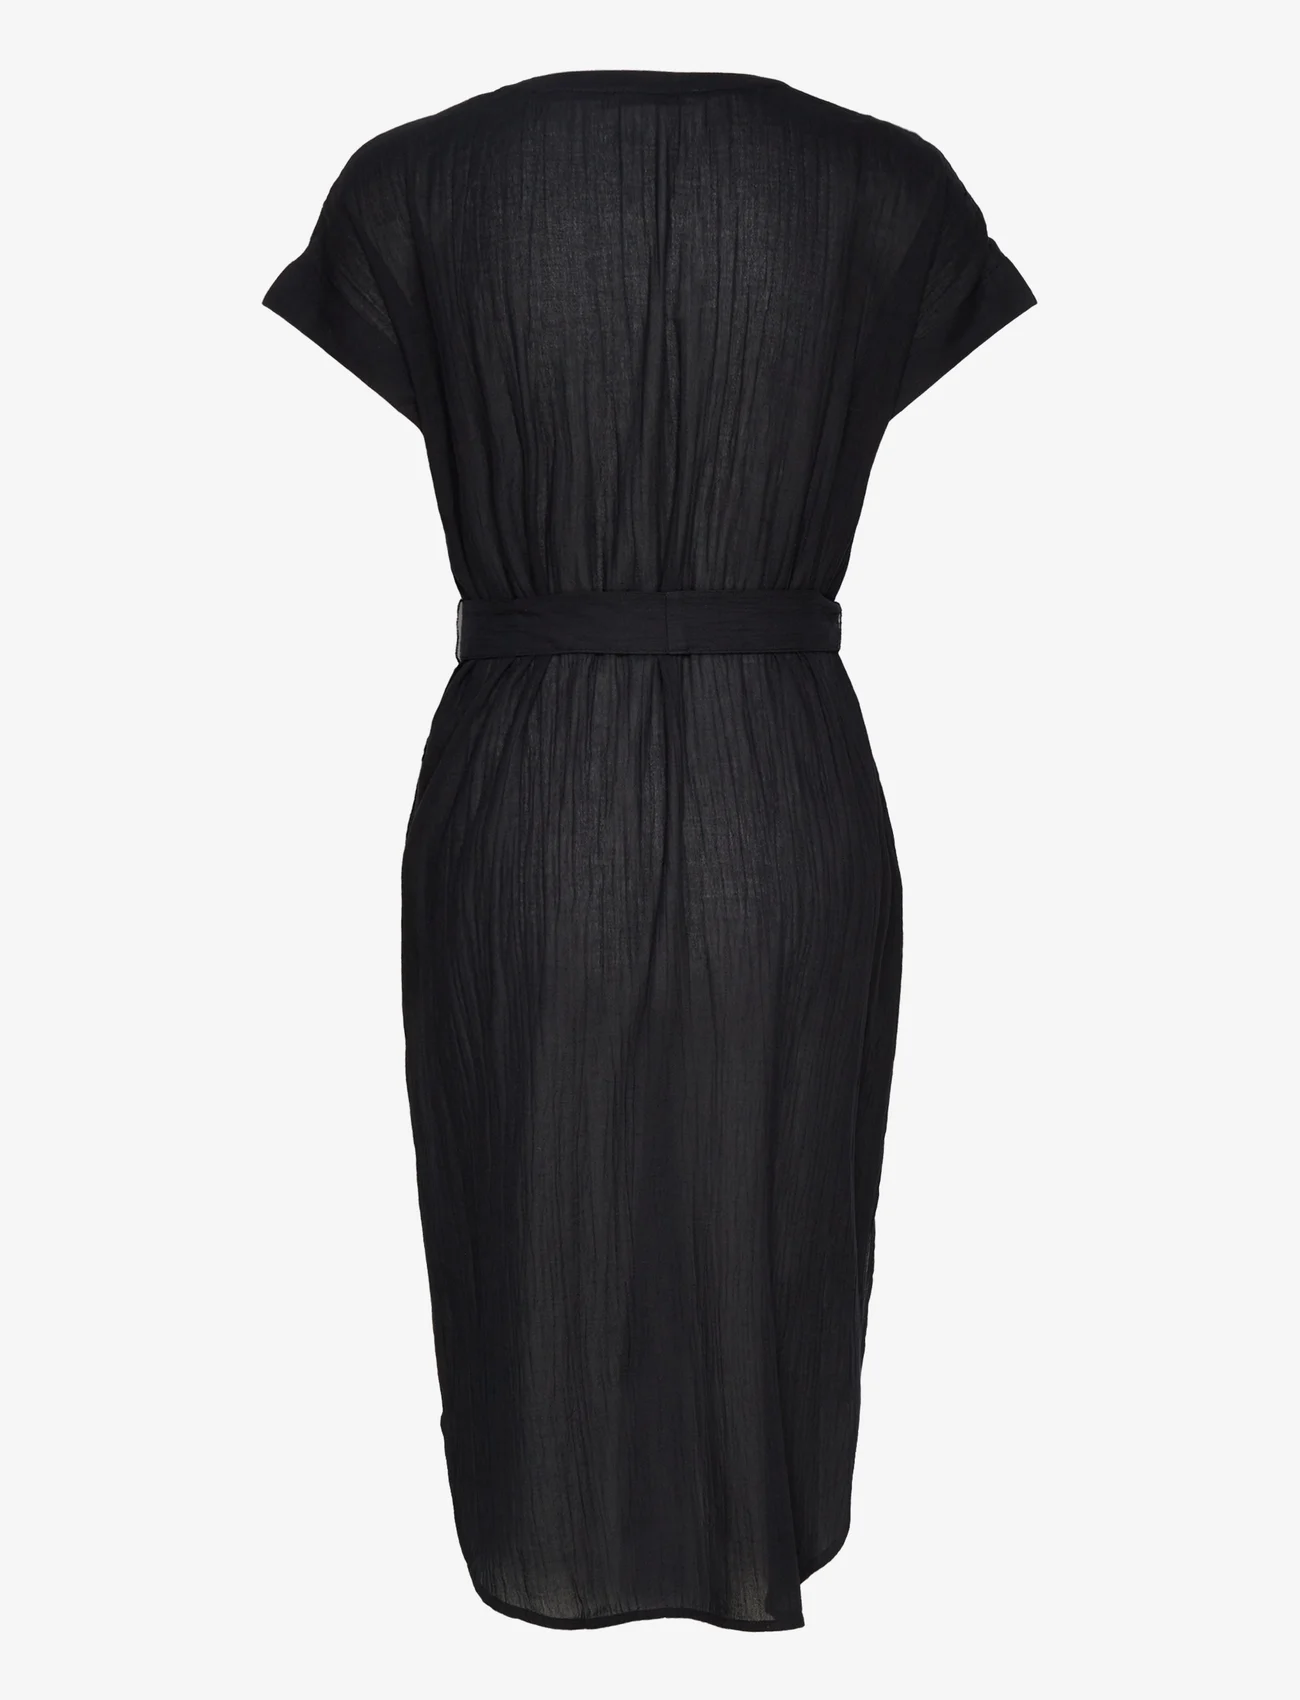 Esprit Casual - Crinkled midi dress with belt - särkkleidid - black 4 - 1